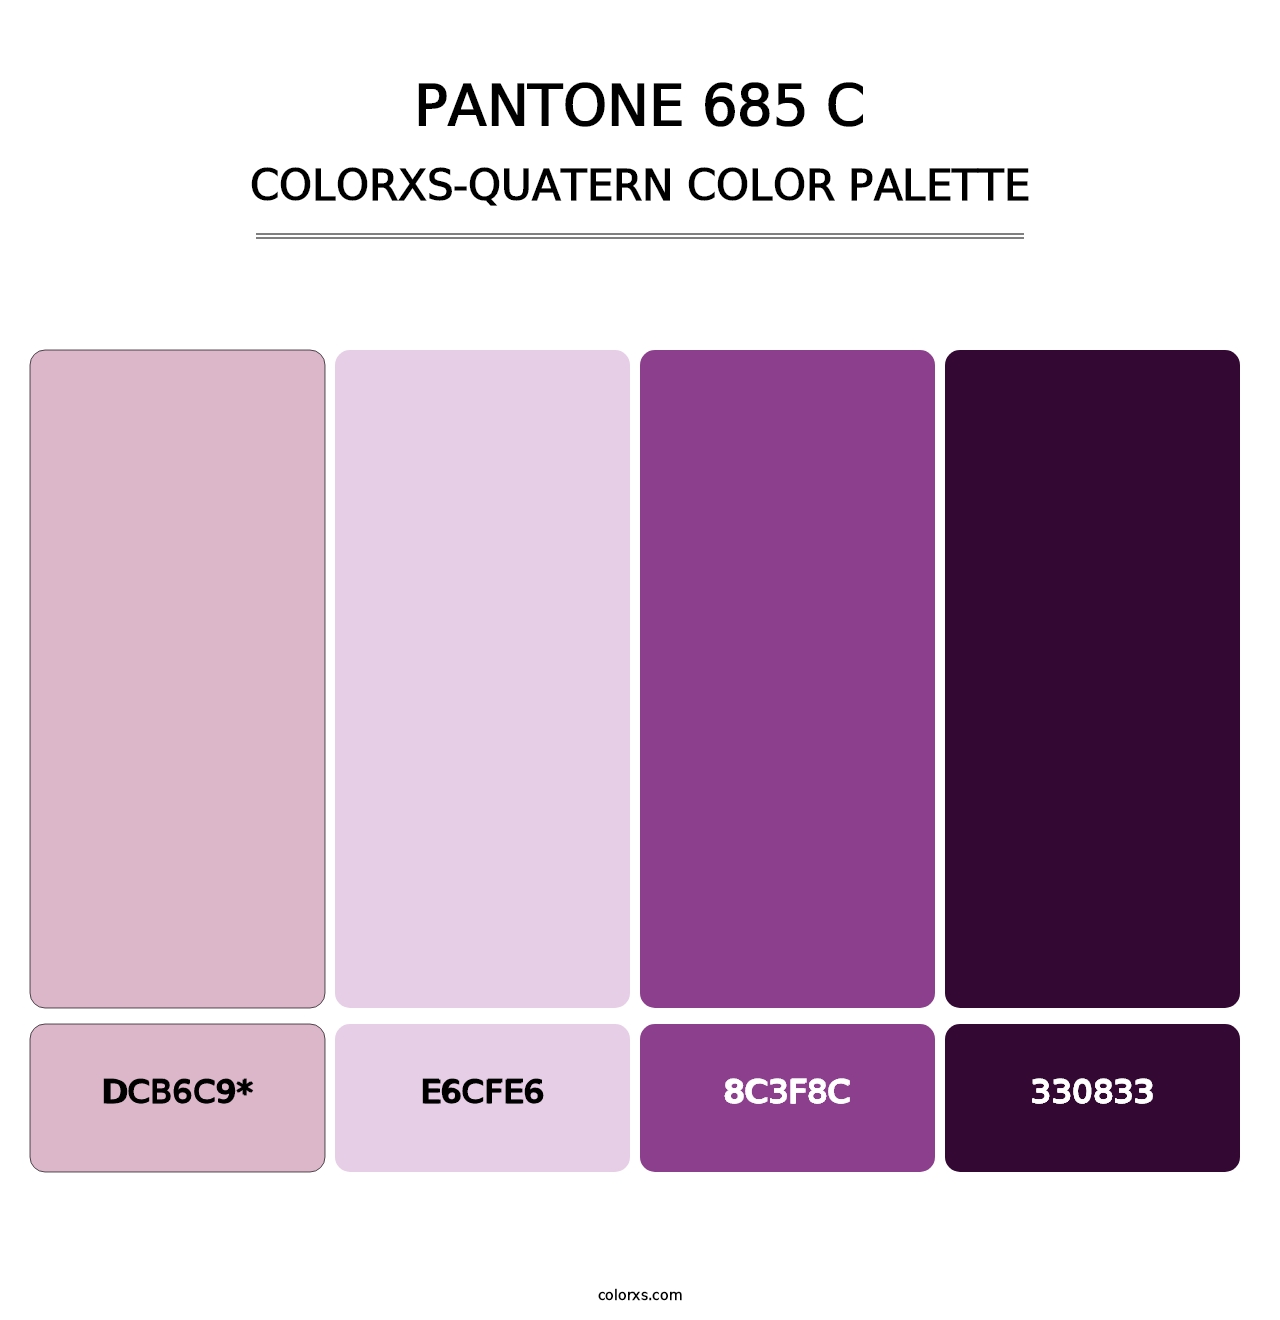 PANTONE 685 C - Colorxs Quatern Palette